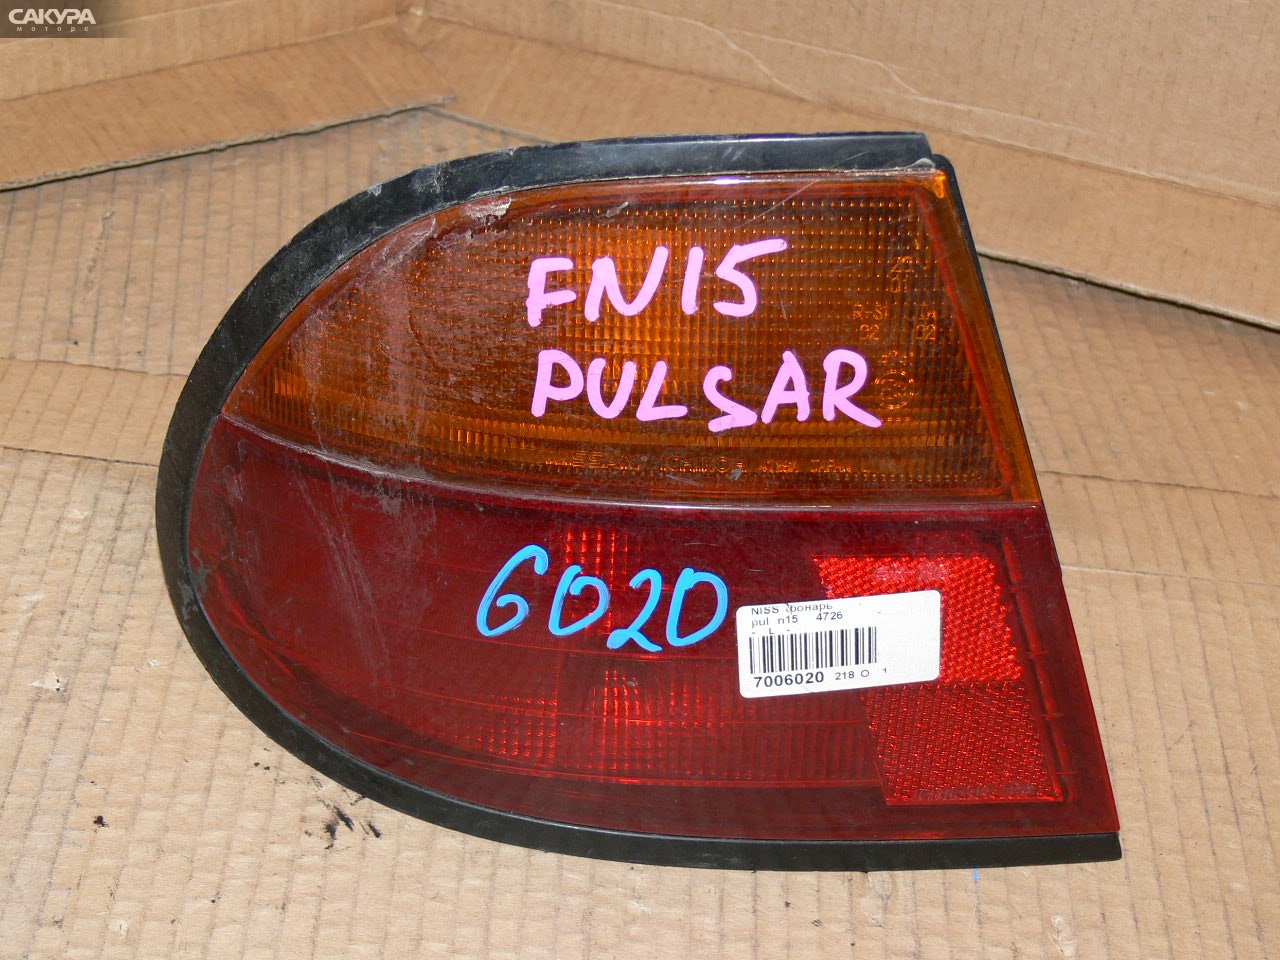 Фонарь стоп-сигнала левый Nissan Pulsar EN15 4726: купить в Сакура Иркутск.